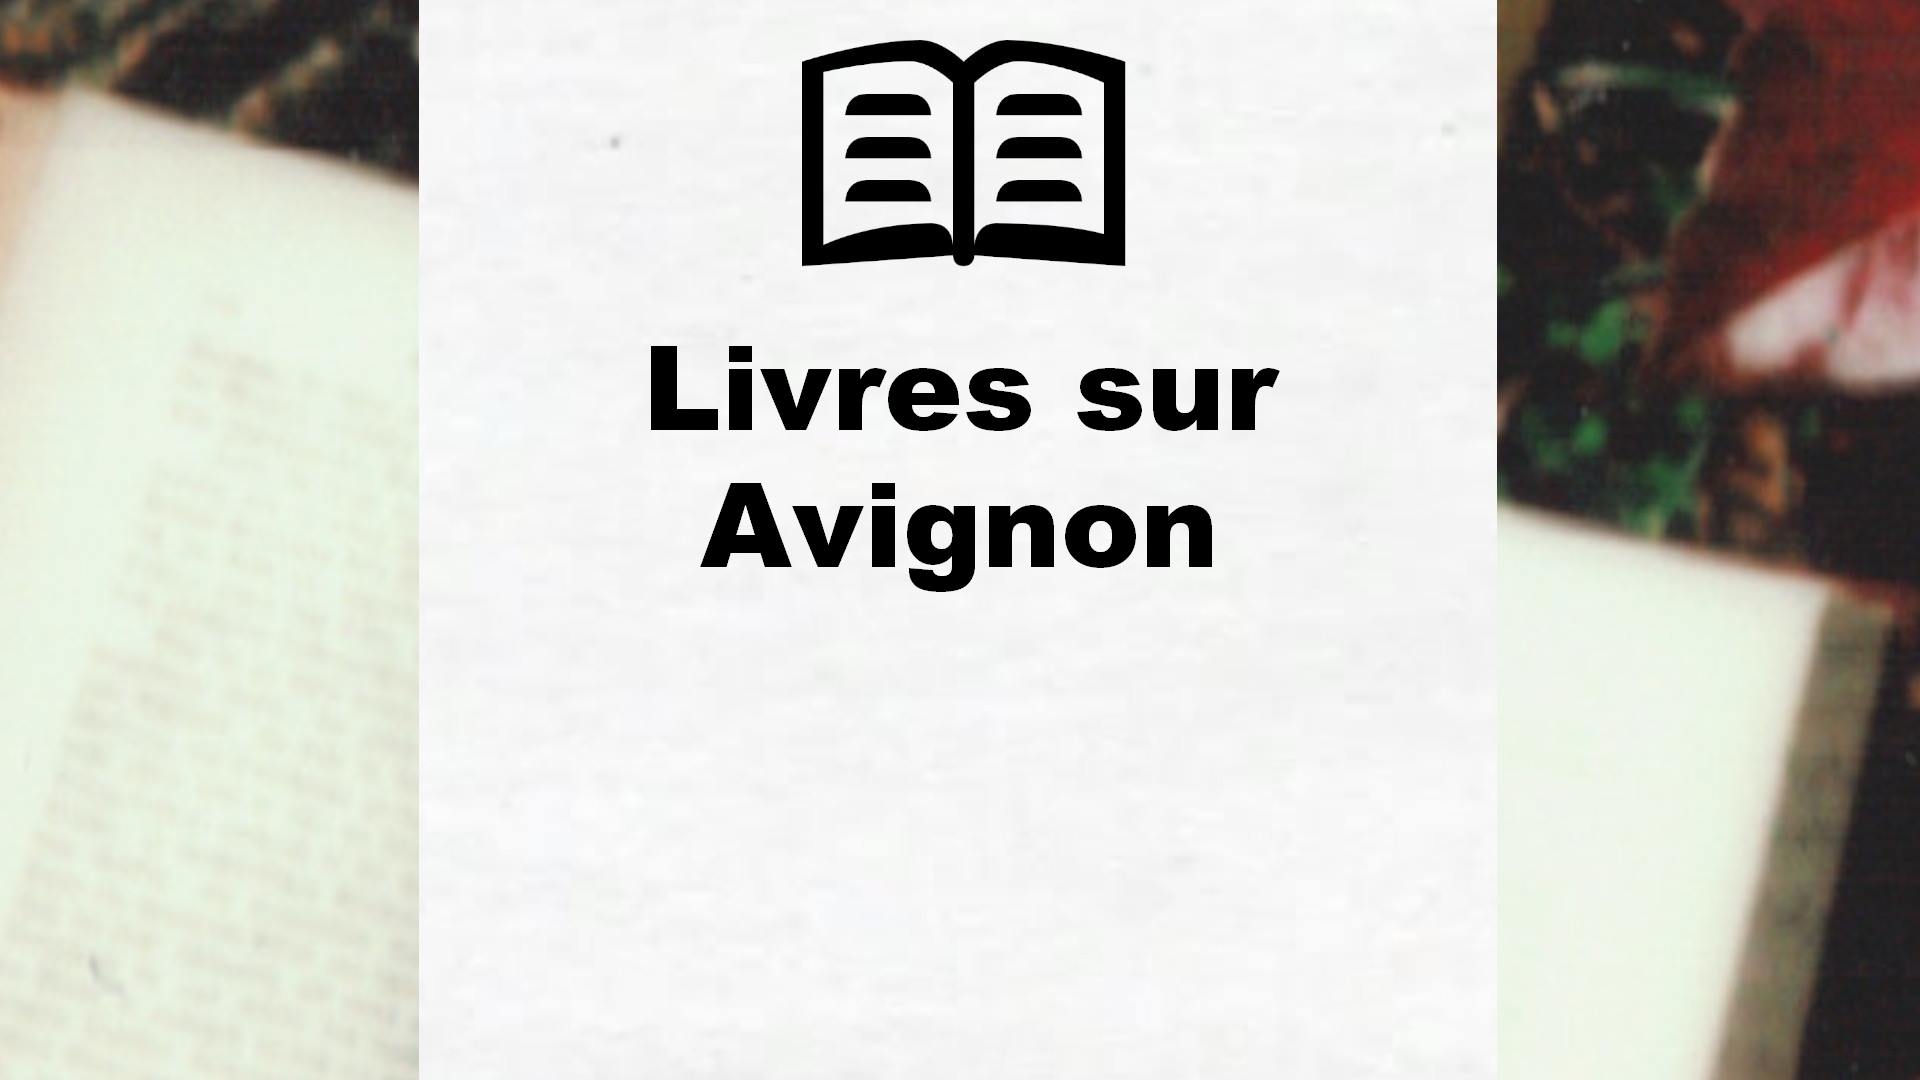 Livres sur Avignon